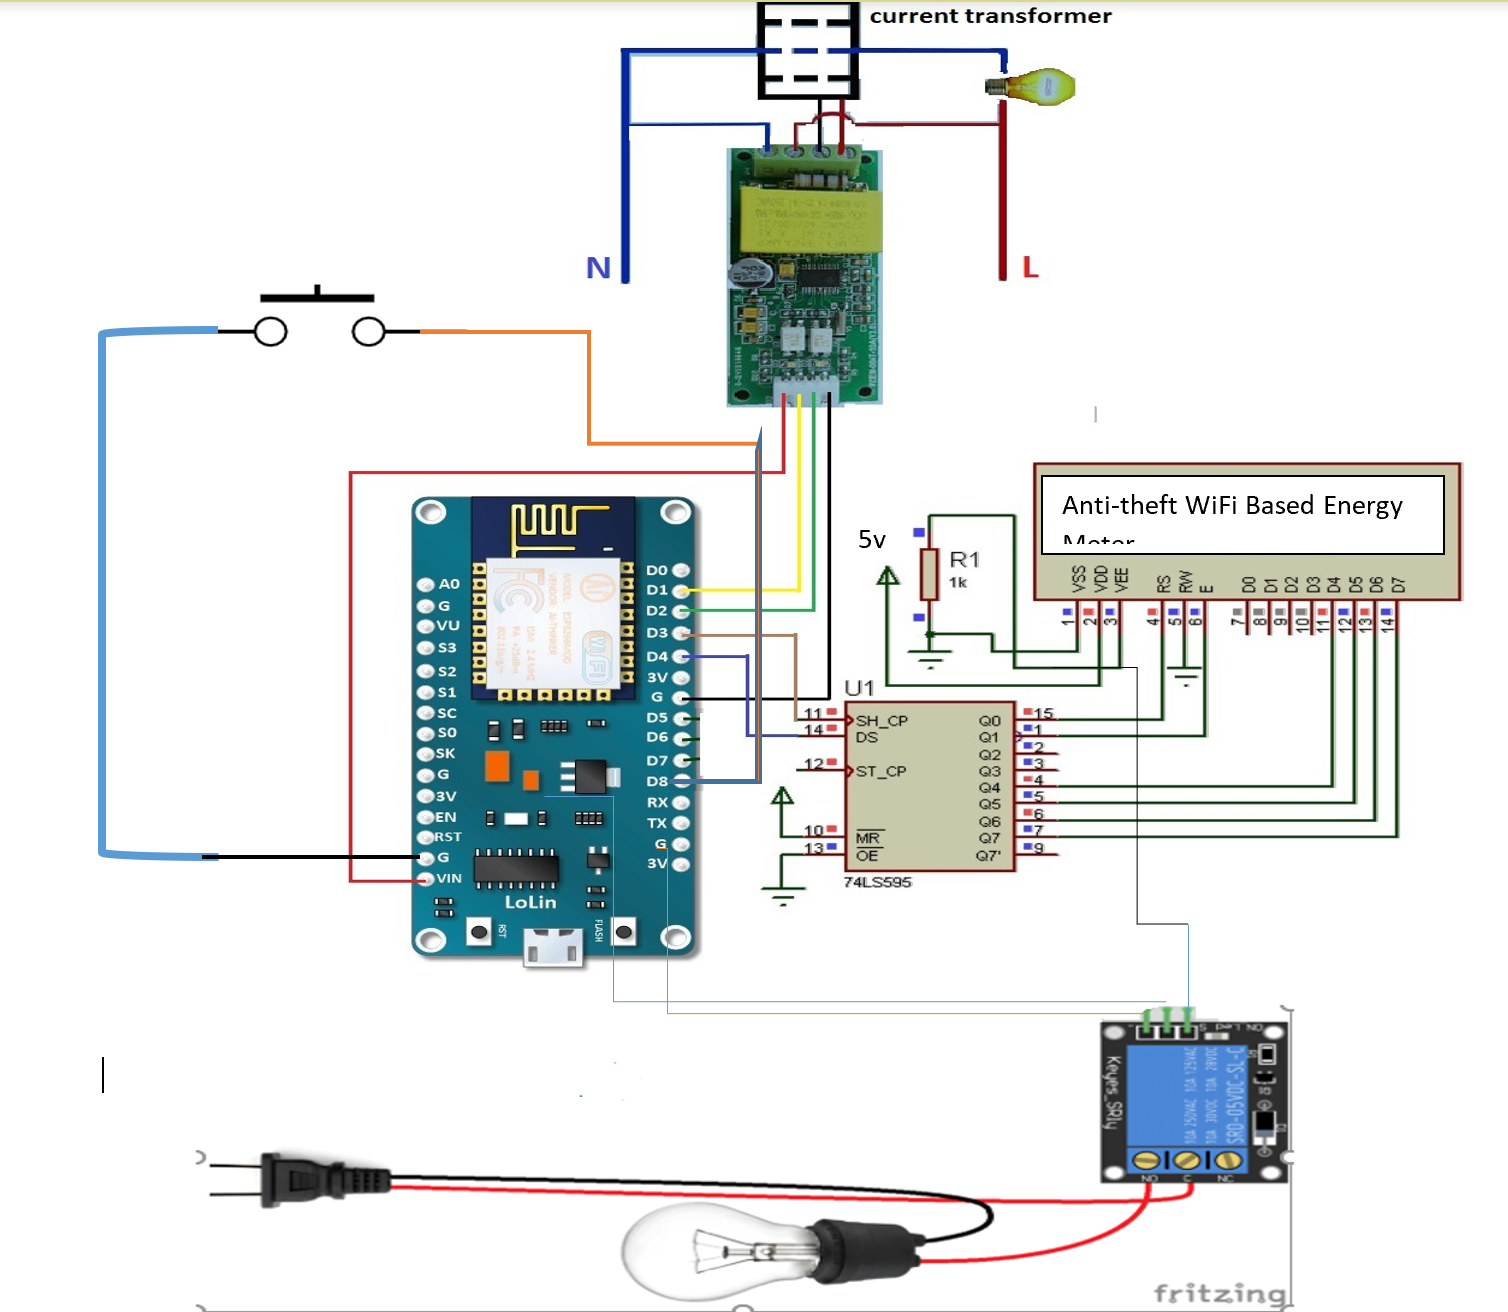 Circuit diagram for IoT tamper-proof energy meter